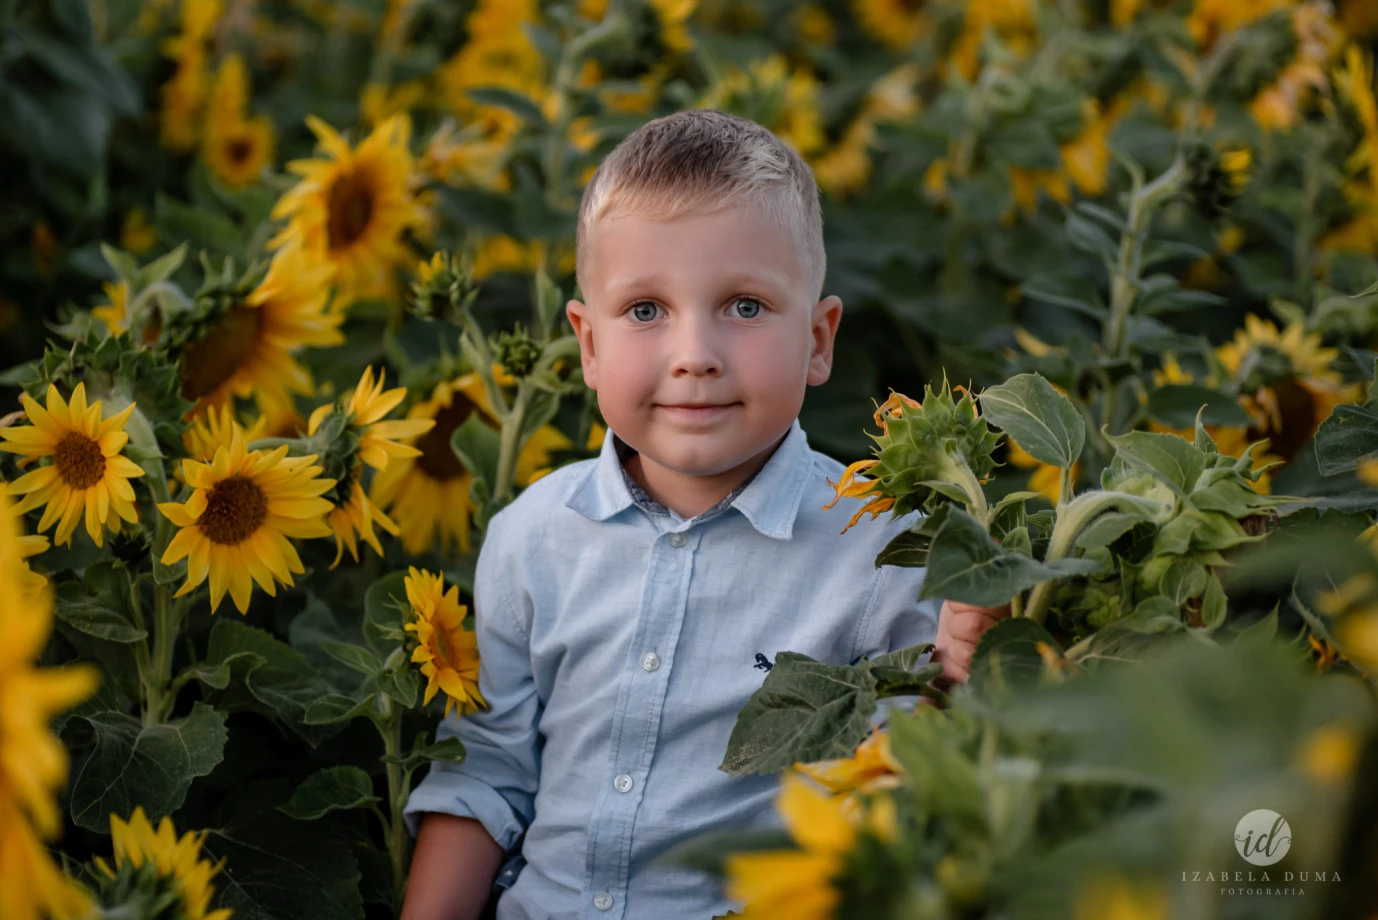 zdjęcia piotrkow-trybunalski fotograf izabela-duma portfolio zdjecia dzieci fotografia dziecieca